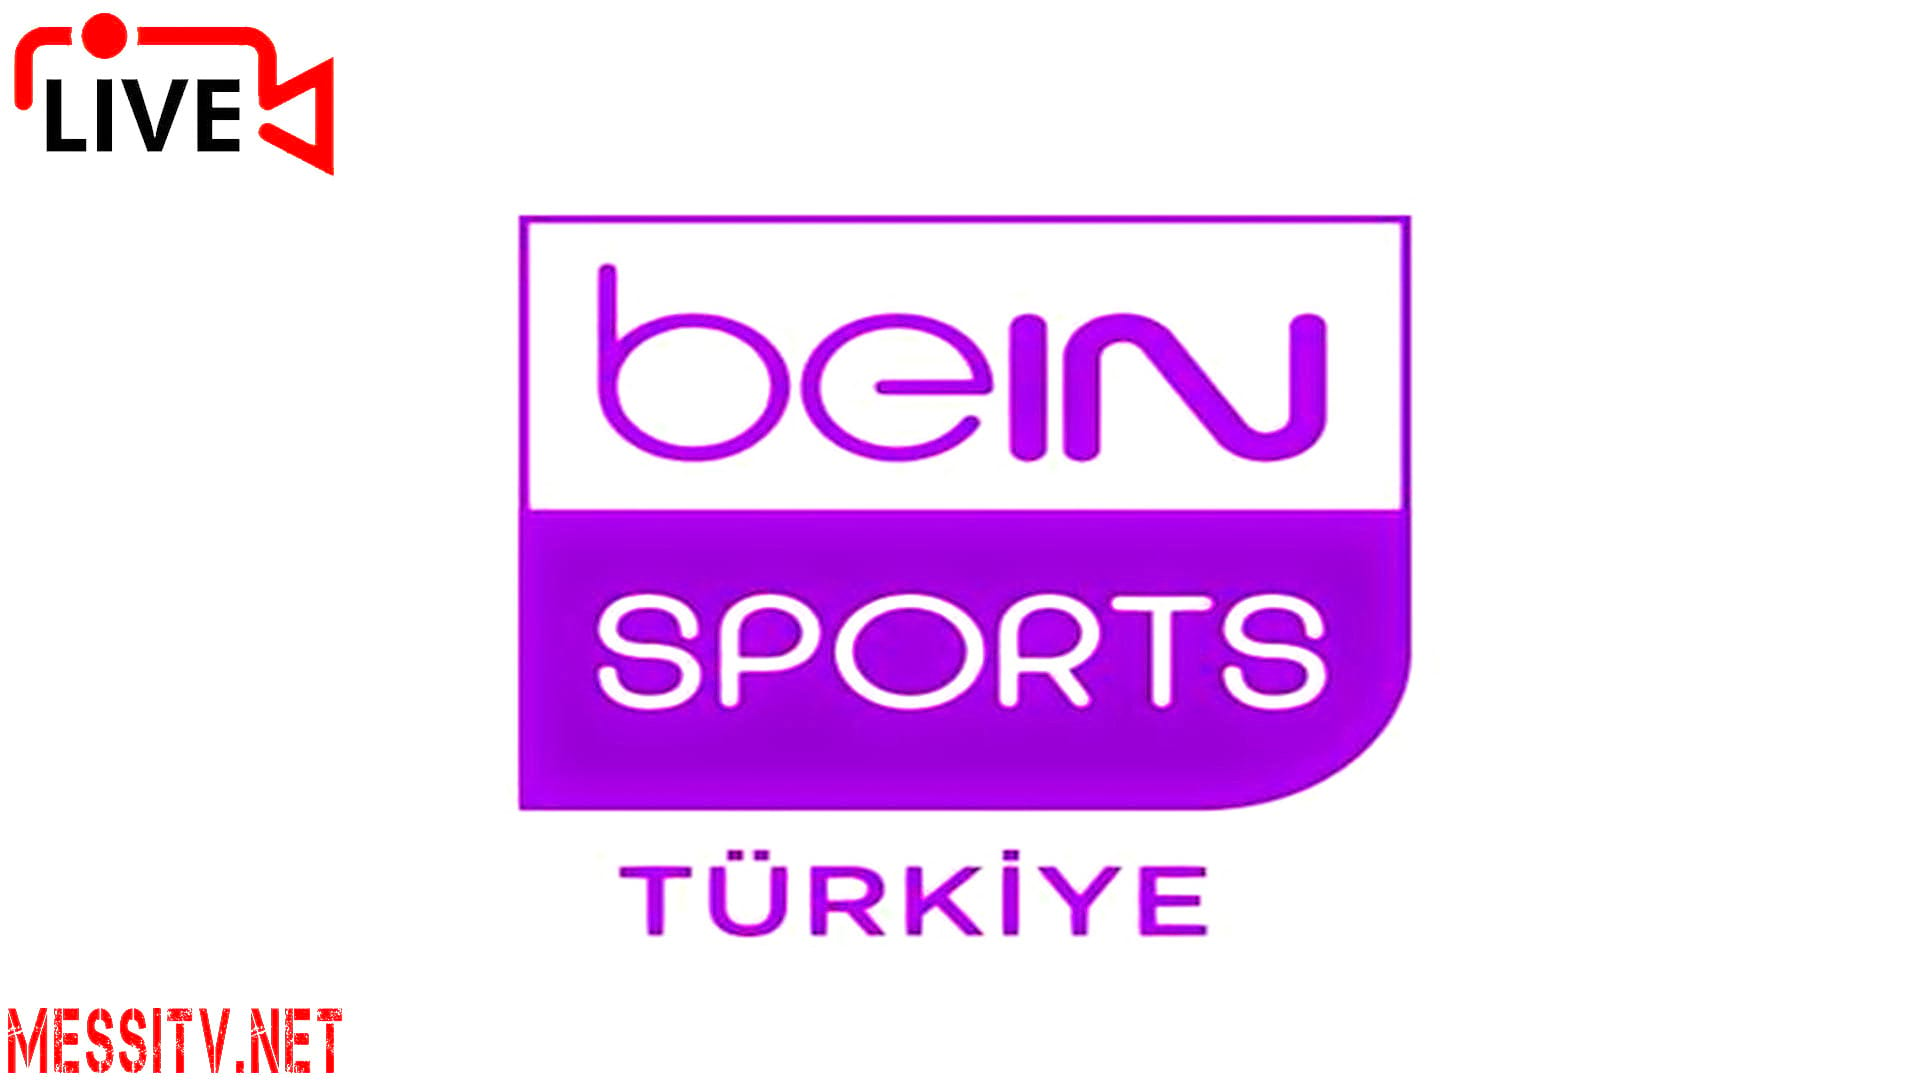 Bein sport 3. Bein Sports 1 Canli. Bein Sport Turkey. Bein Sport Canli izle.